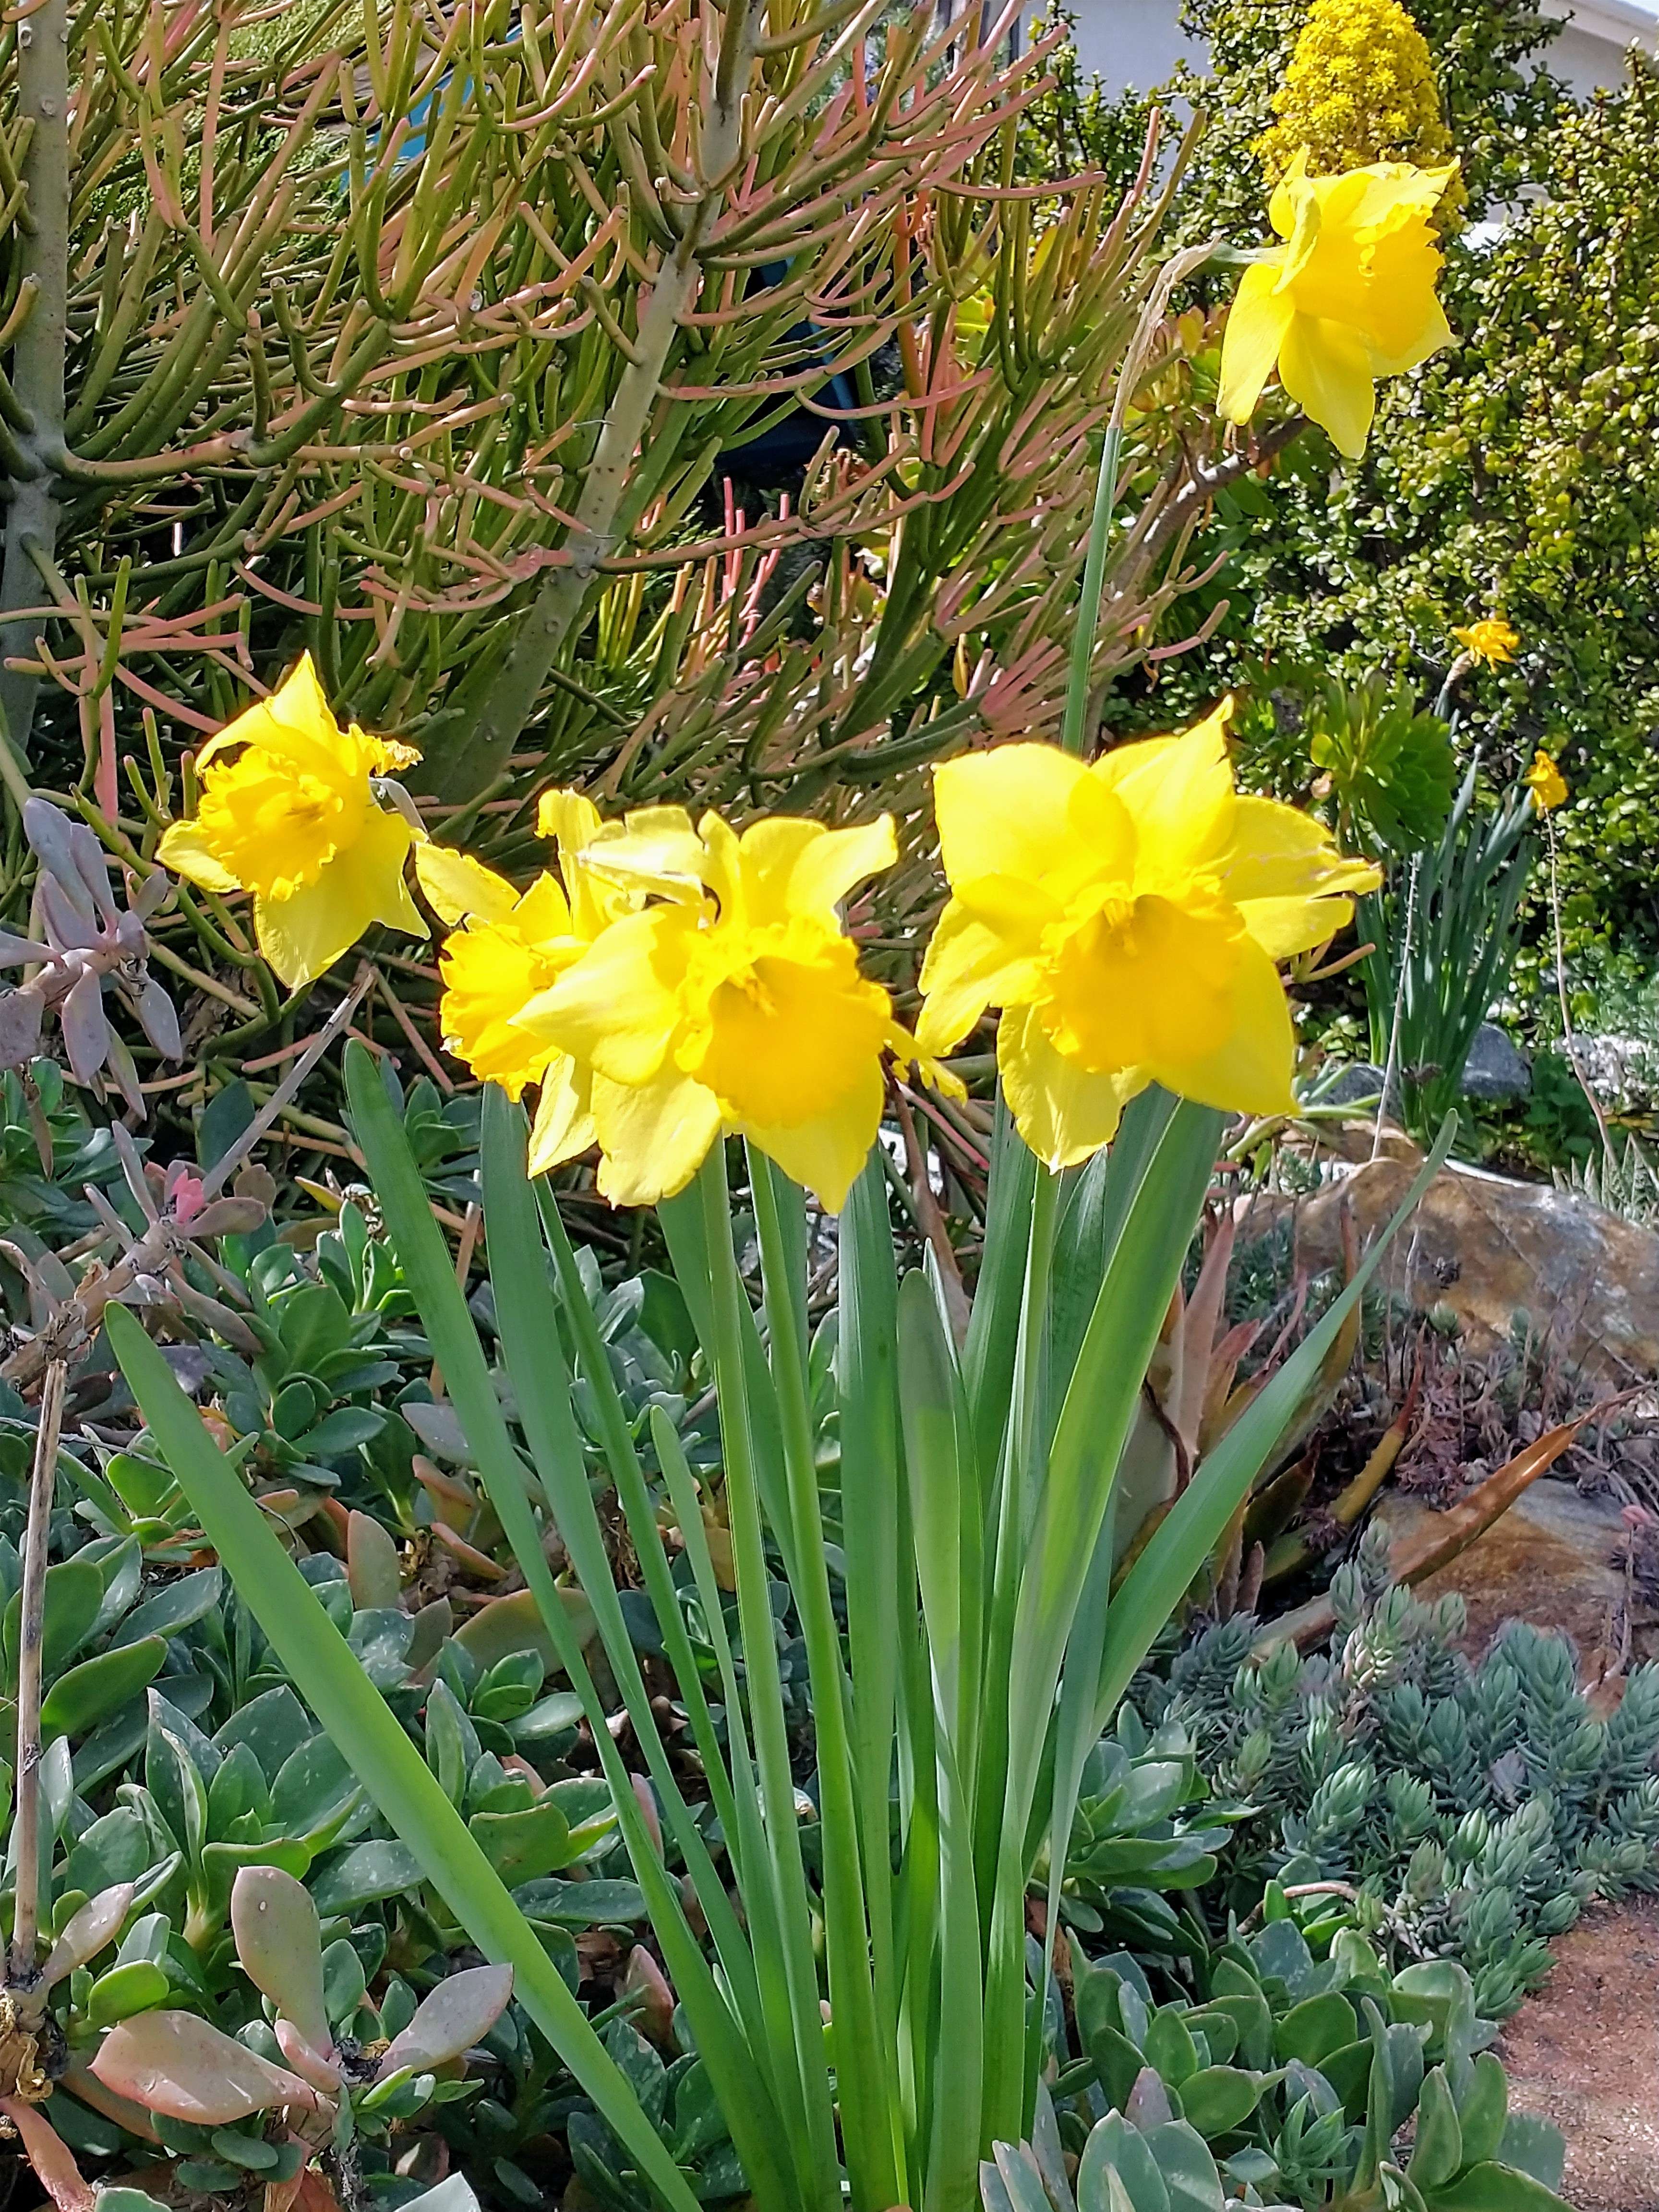 Four daffodils